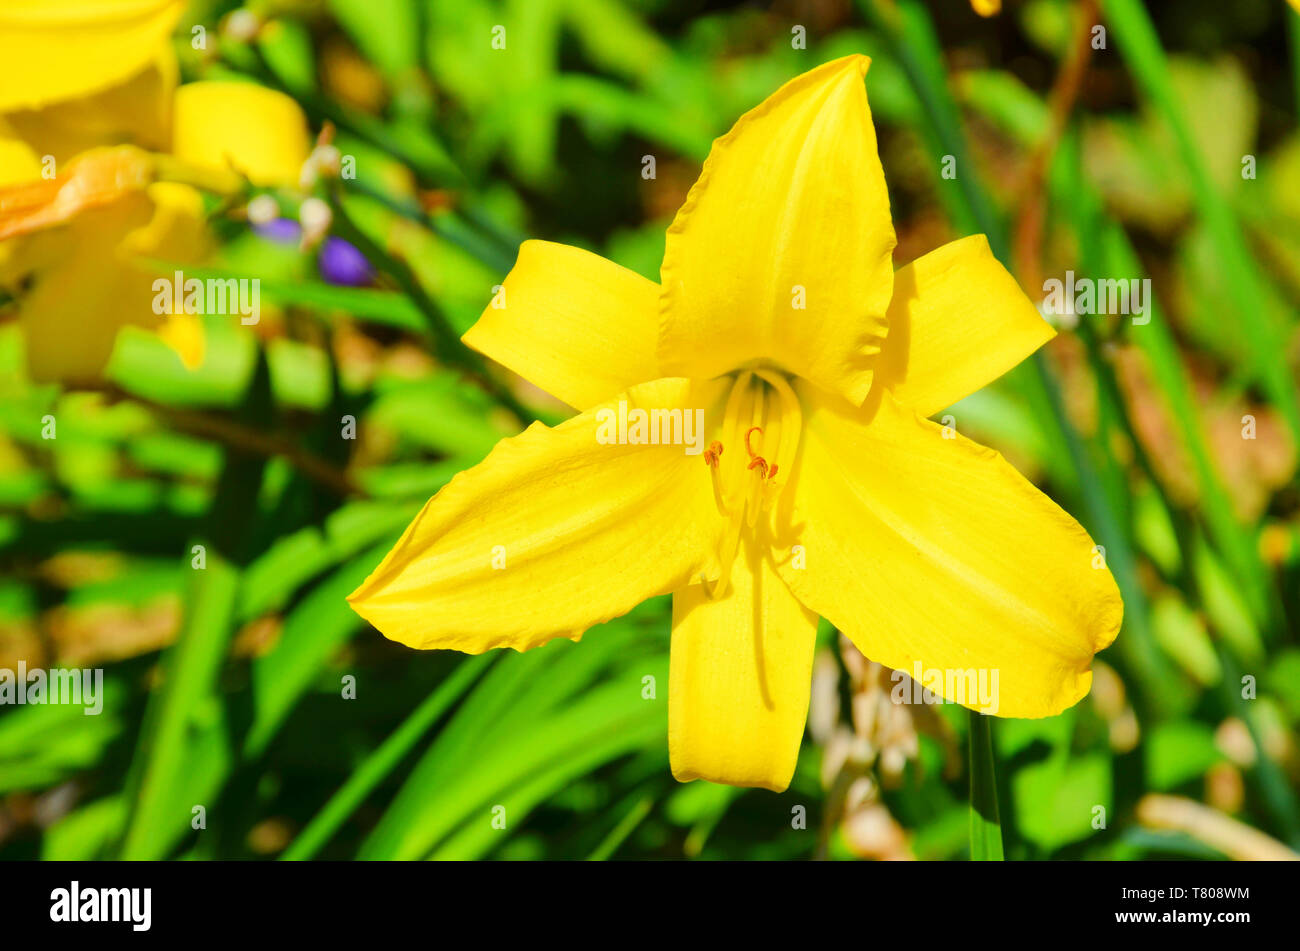 Fotografía macro de bella flor lirio amarillo con fondo verde borrosa  tomada durante el tiempo de primavera. Esta flor del género Lilium tiene  hojas de color amarillo brillante y el centro amarillo